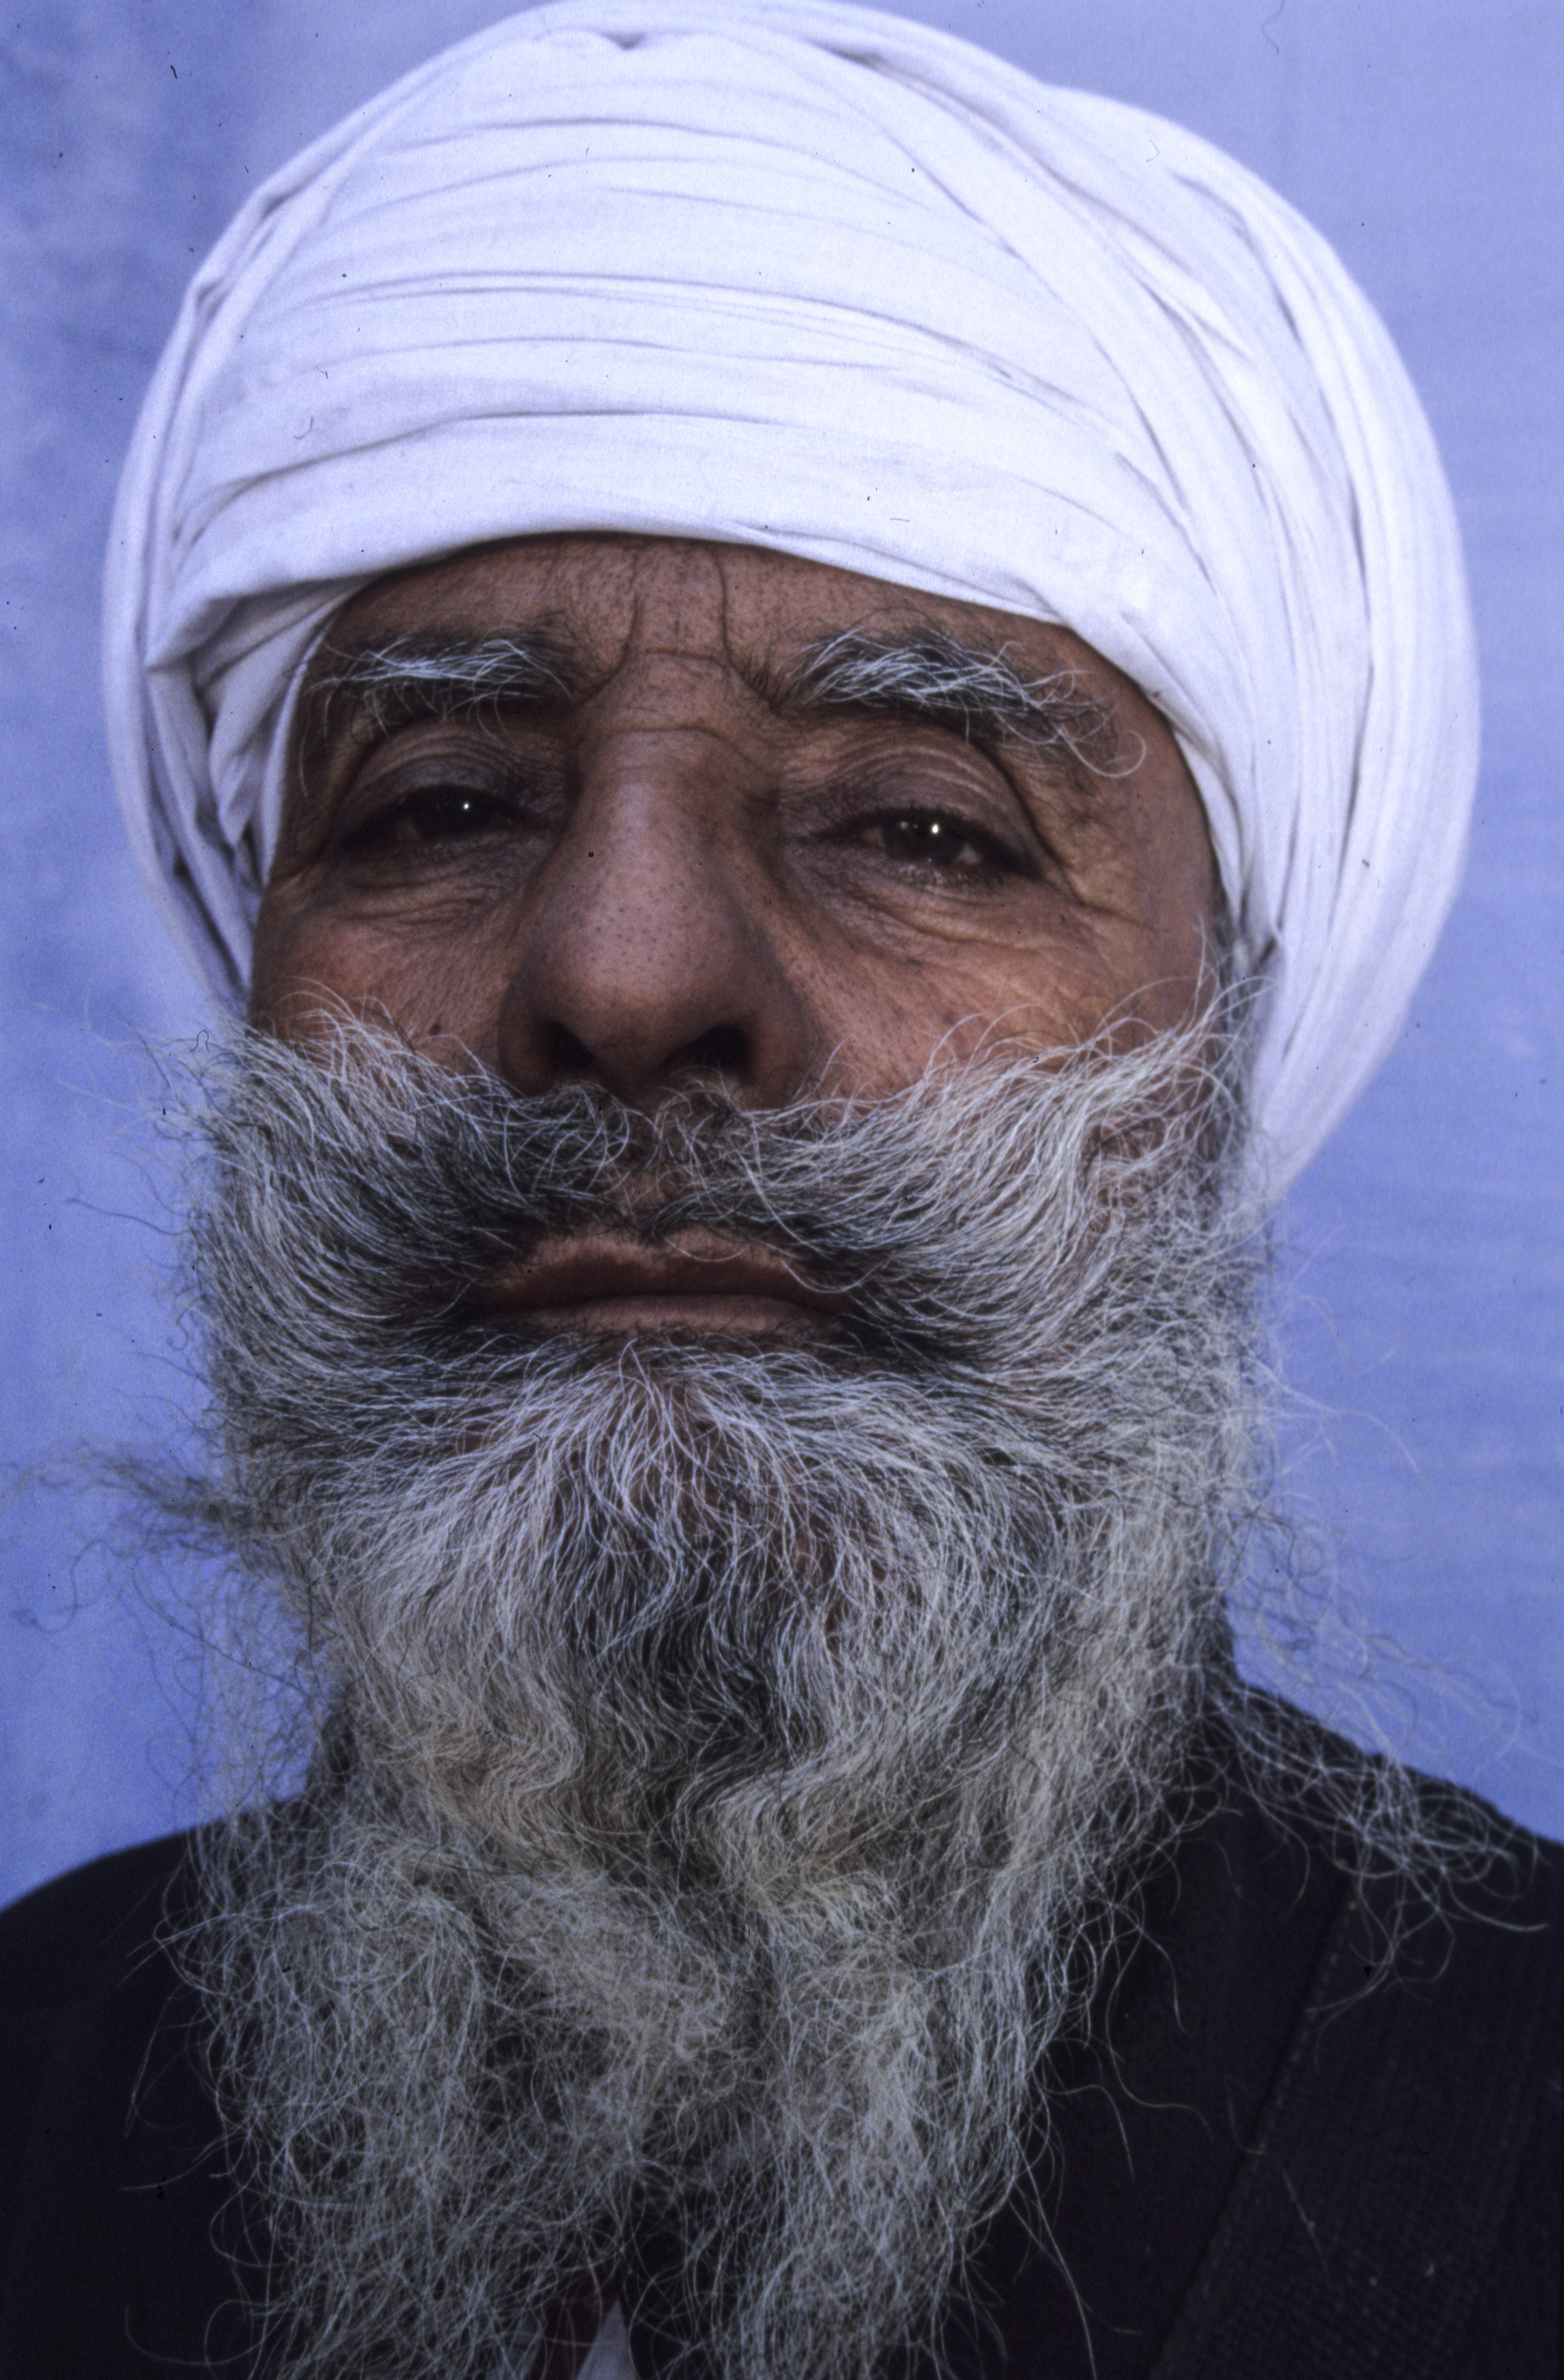 Punjabi man